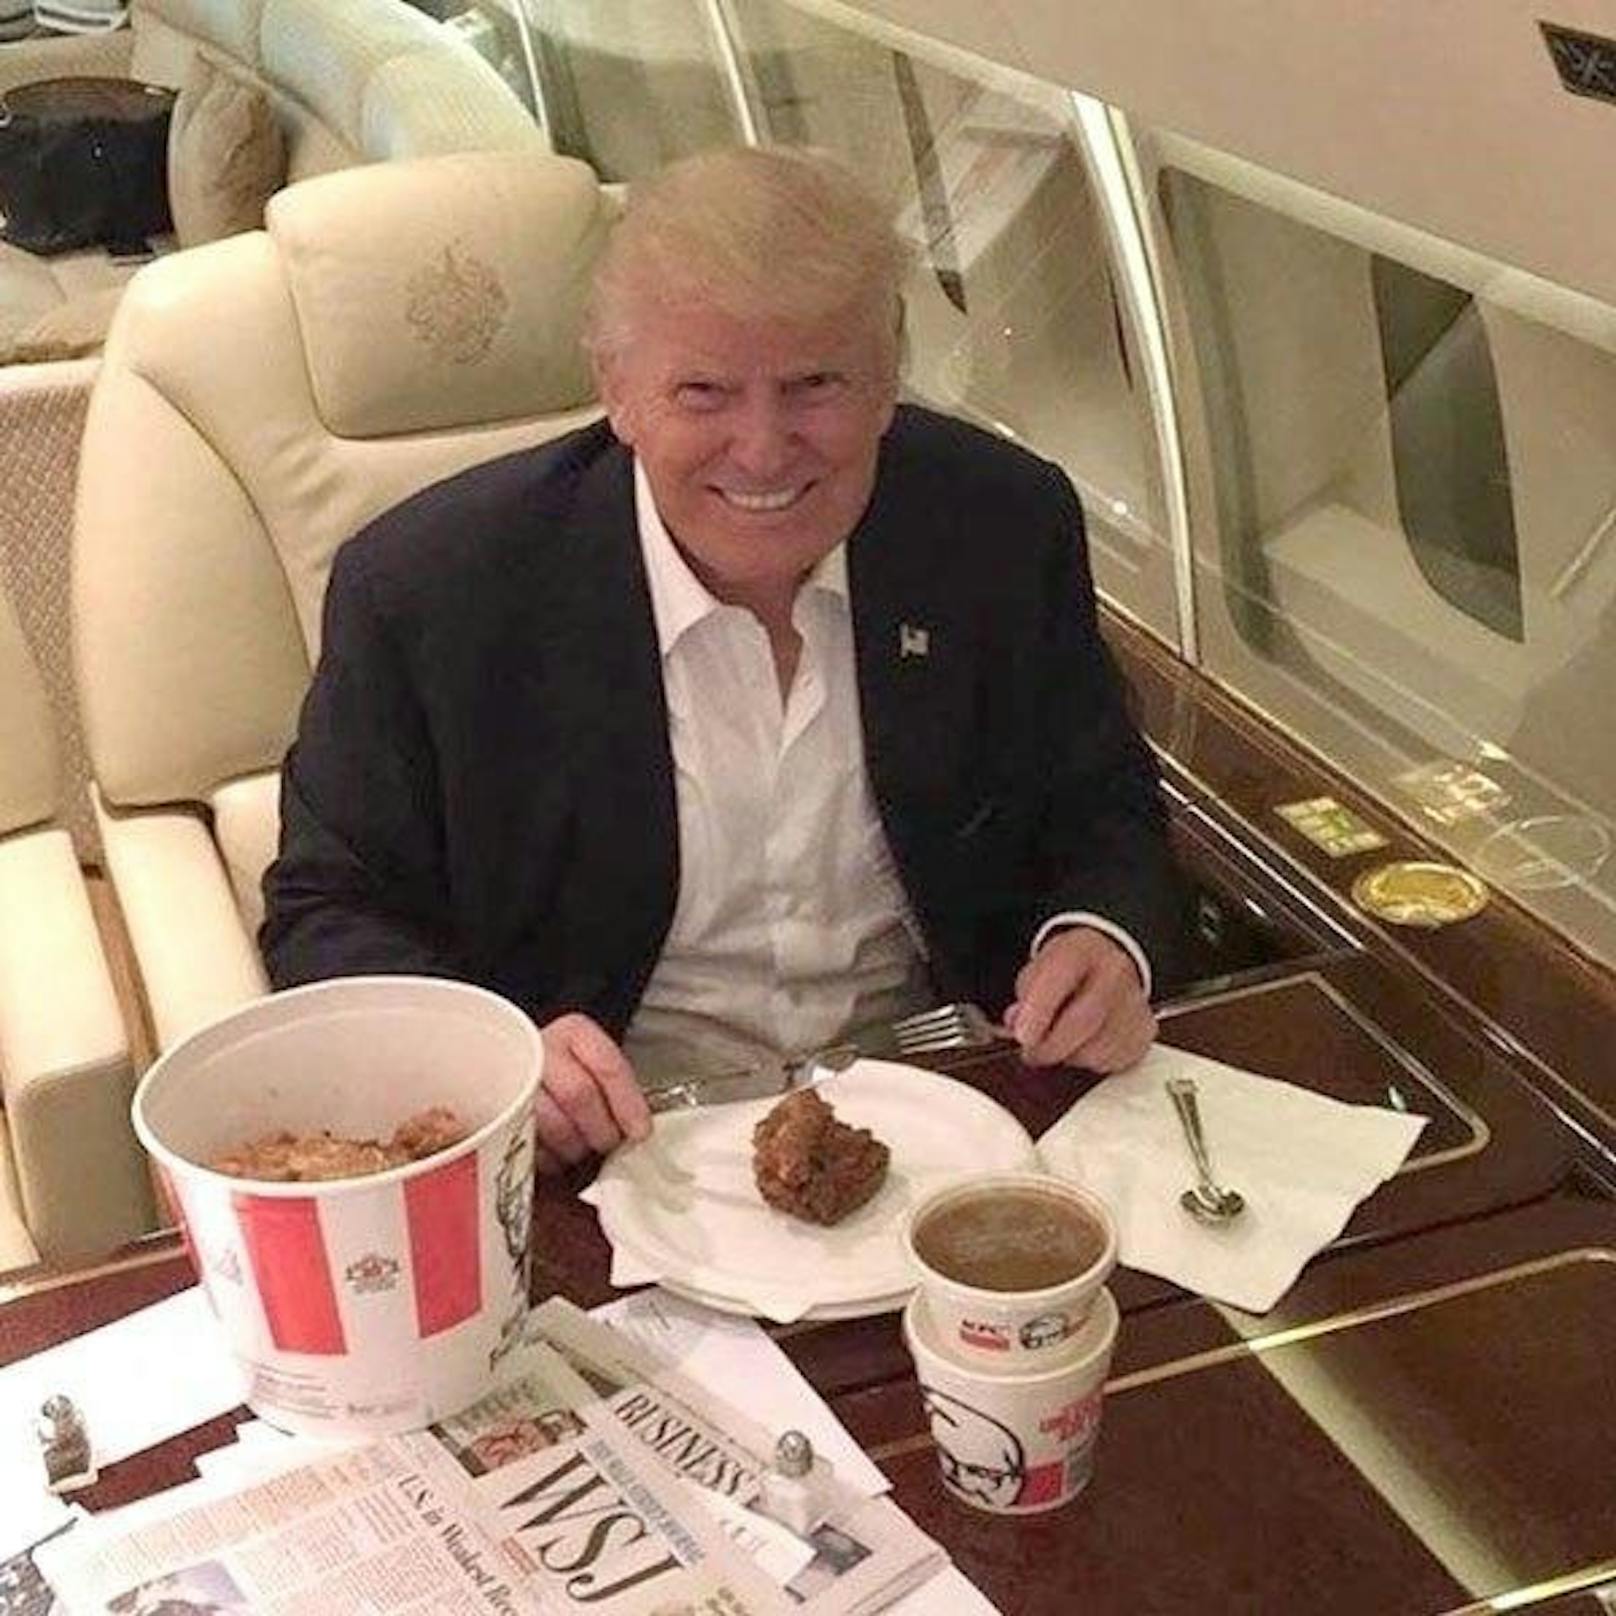 <b>Trump hat Angst vergiftet zu werden</b>

"Er hatte eine langjährige Angst davor, vergiftet zu werden, ein Grund, warum er gern bei McDonald's isst - niemand wusste, dass er kommen würde, und das Essen war bereits sicher zubereitet."